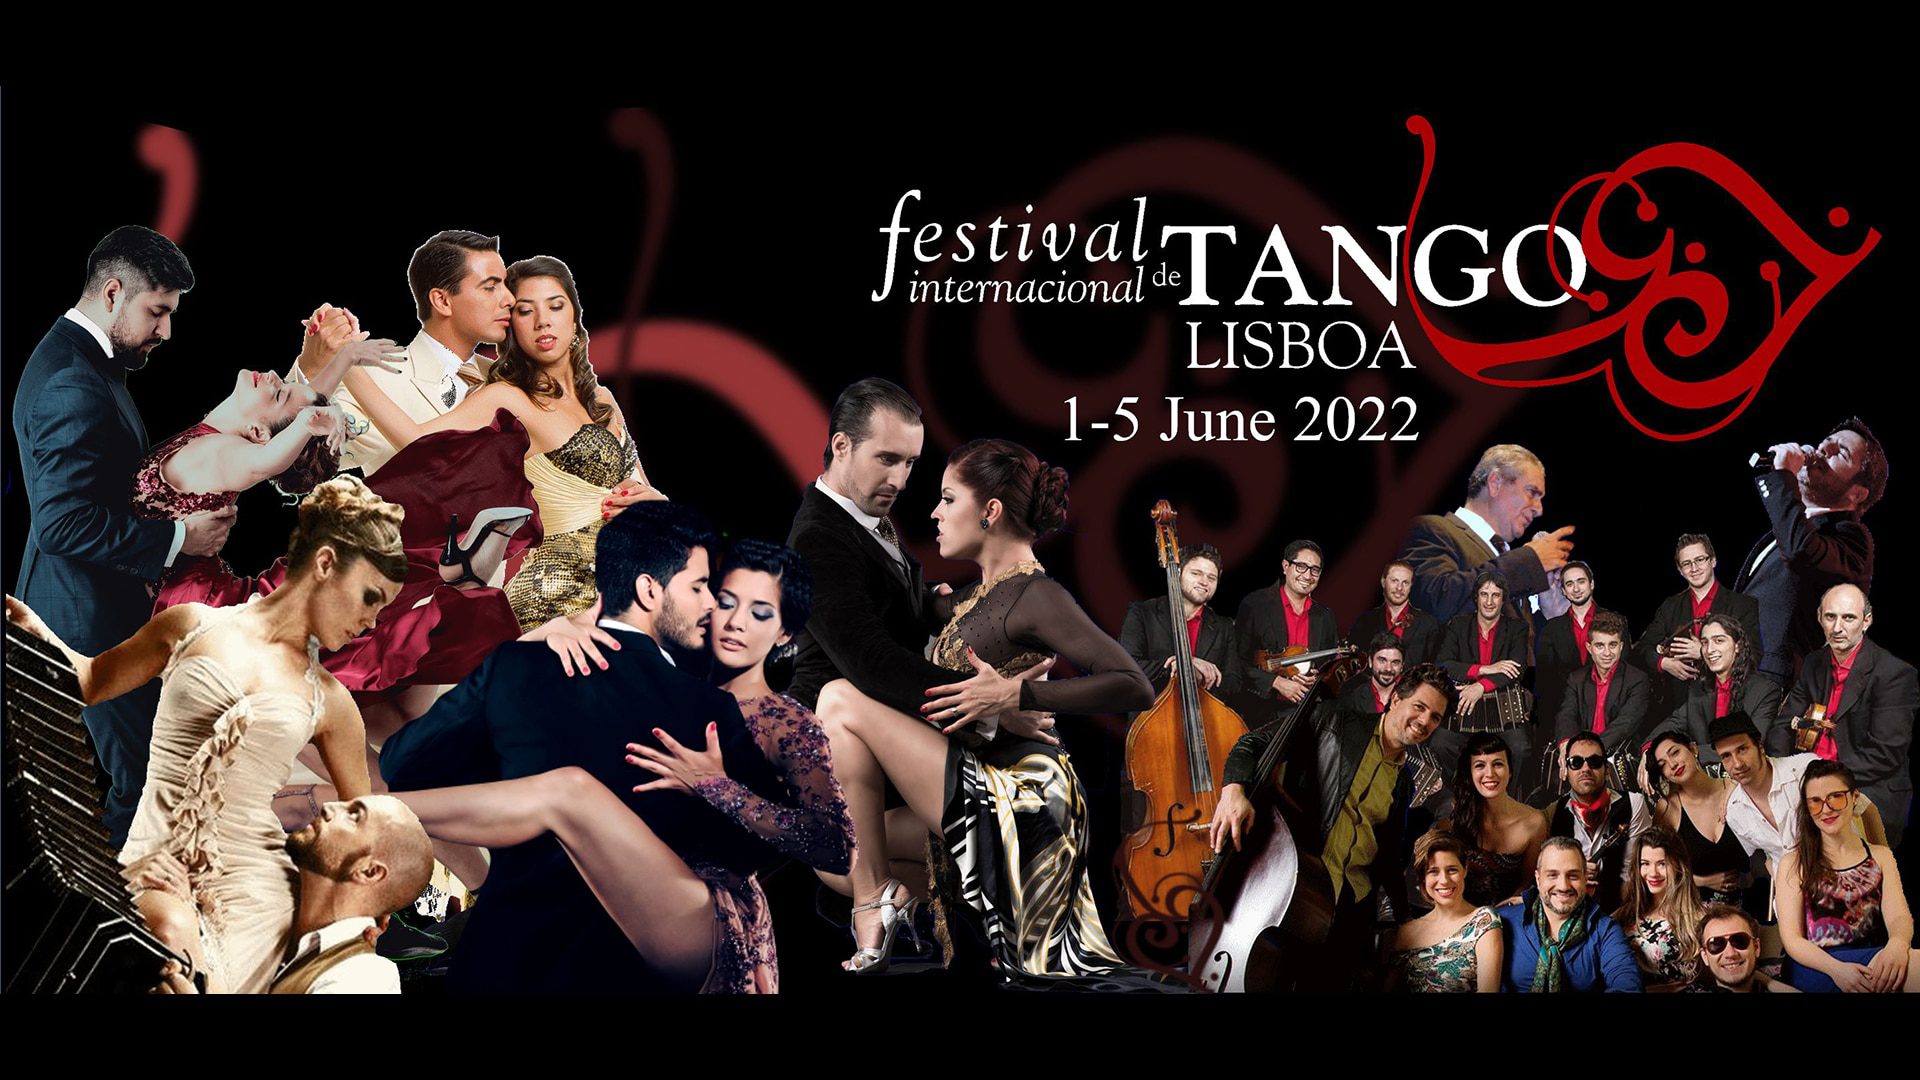 Lisbon Tango Festival 2022 event picture